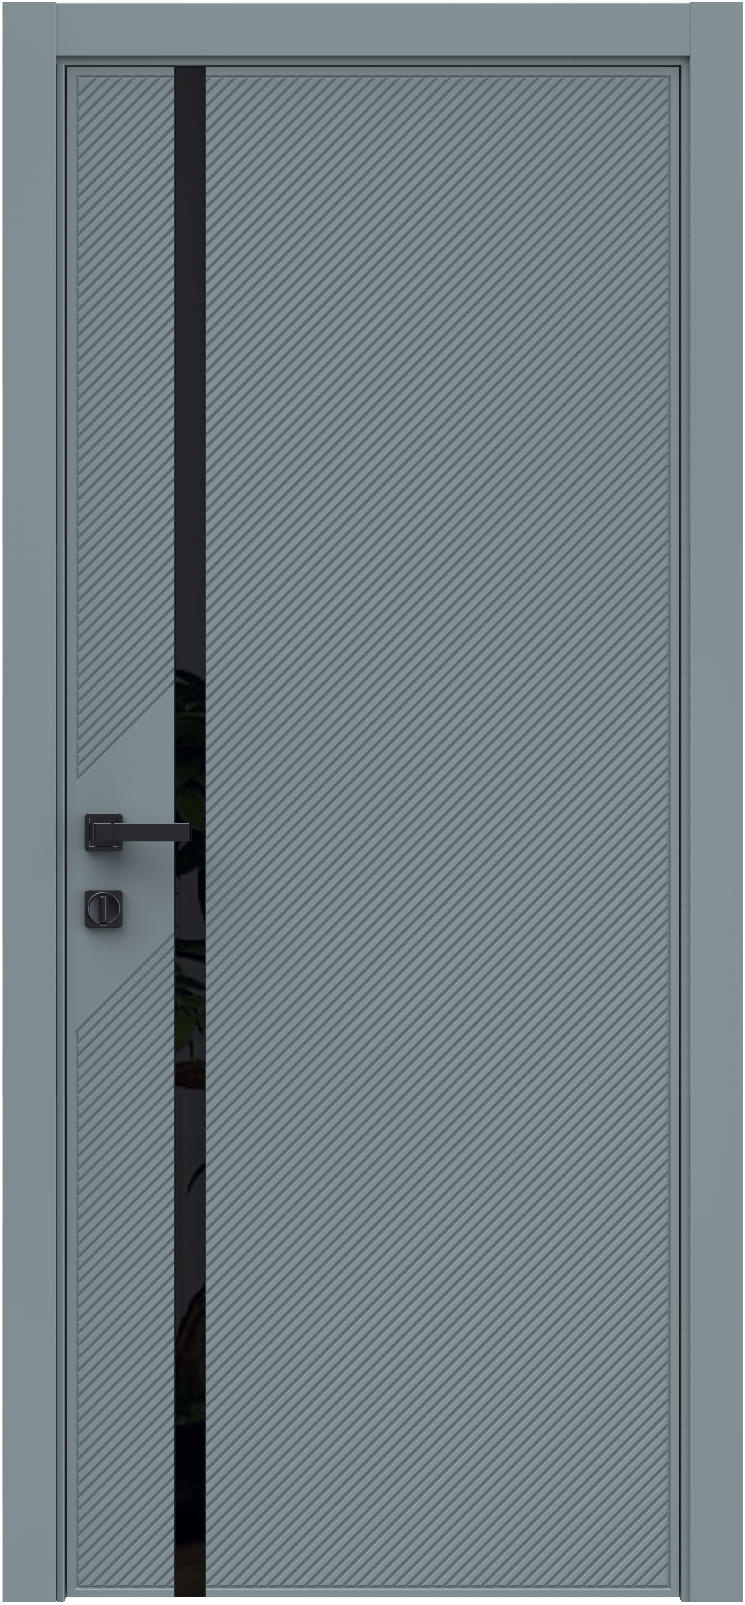 Questdoors Межкомнатная дверь QMS14, арт. 26288 - фото №1